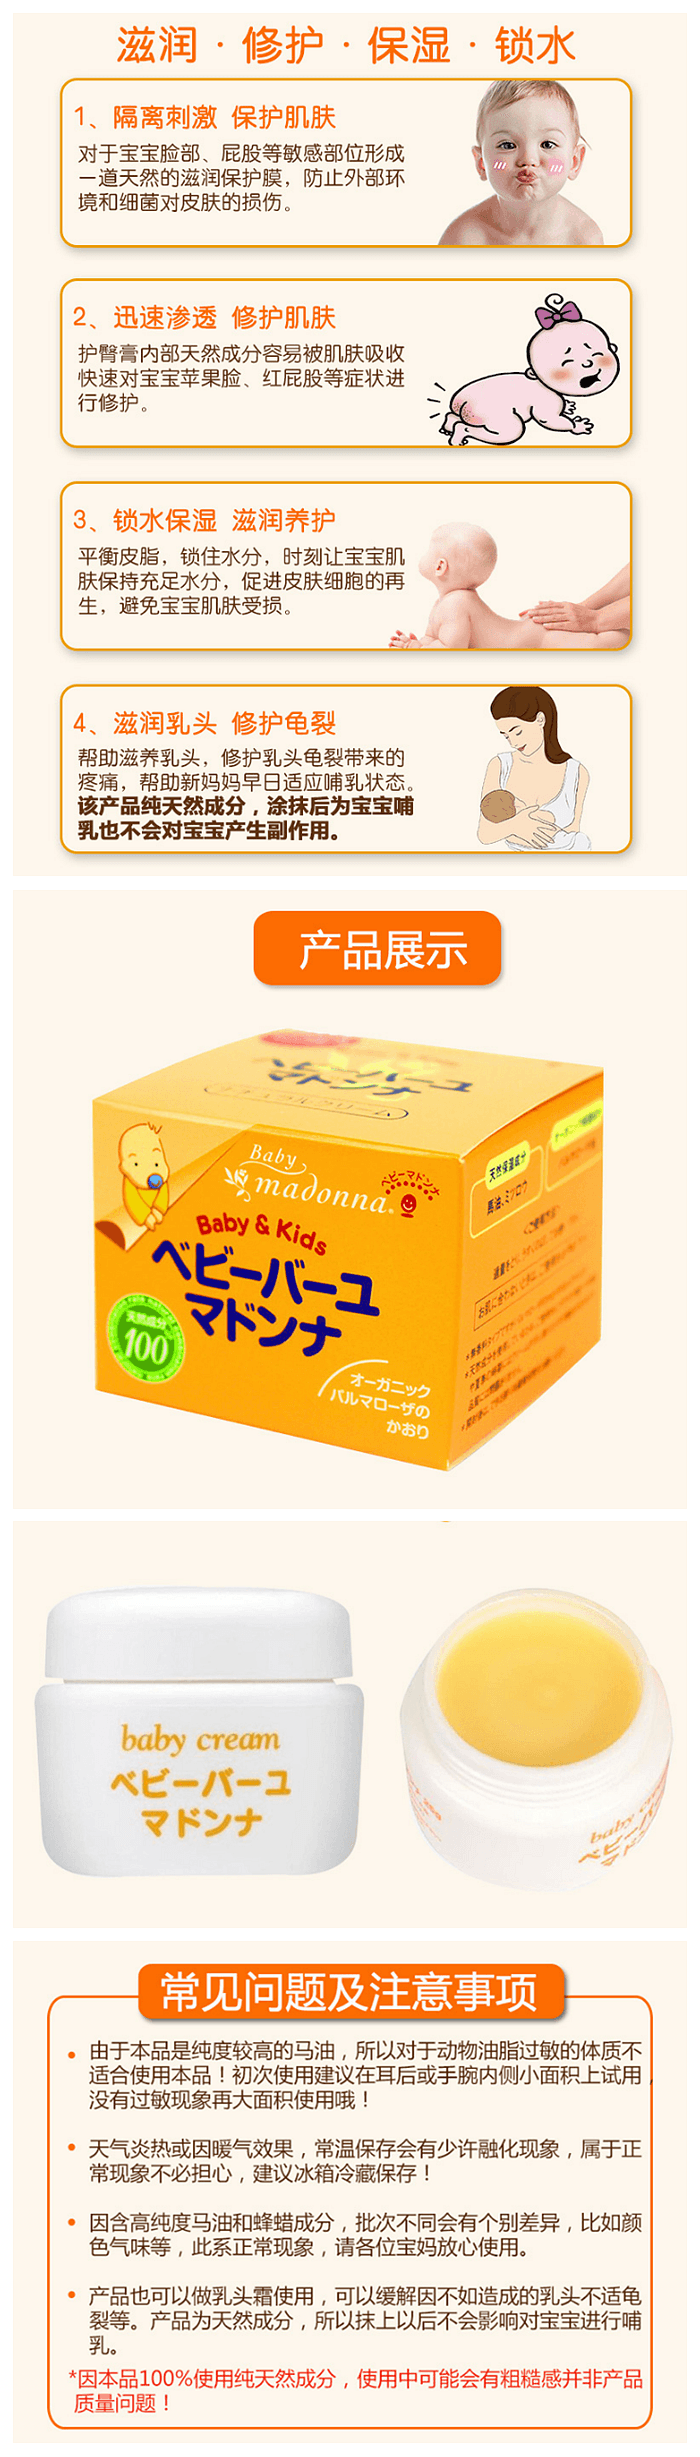 【日本直邮】日本 MADONNA 纯天然配方 婴儿马油 护臀膏 25g